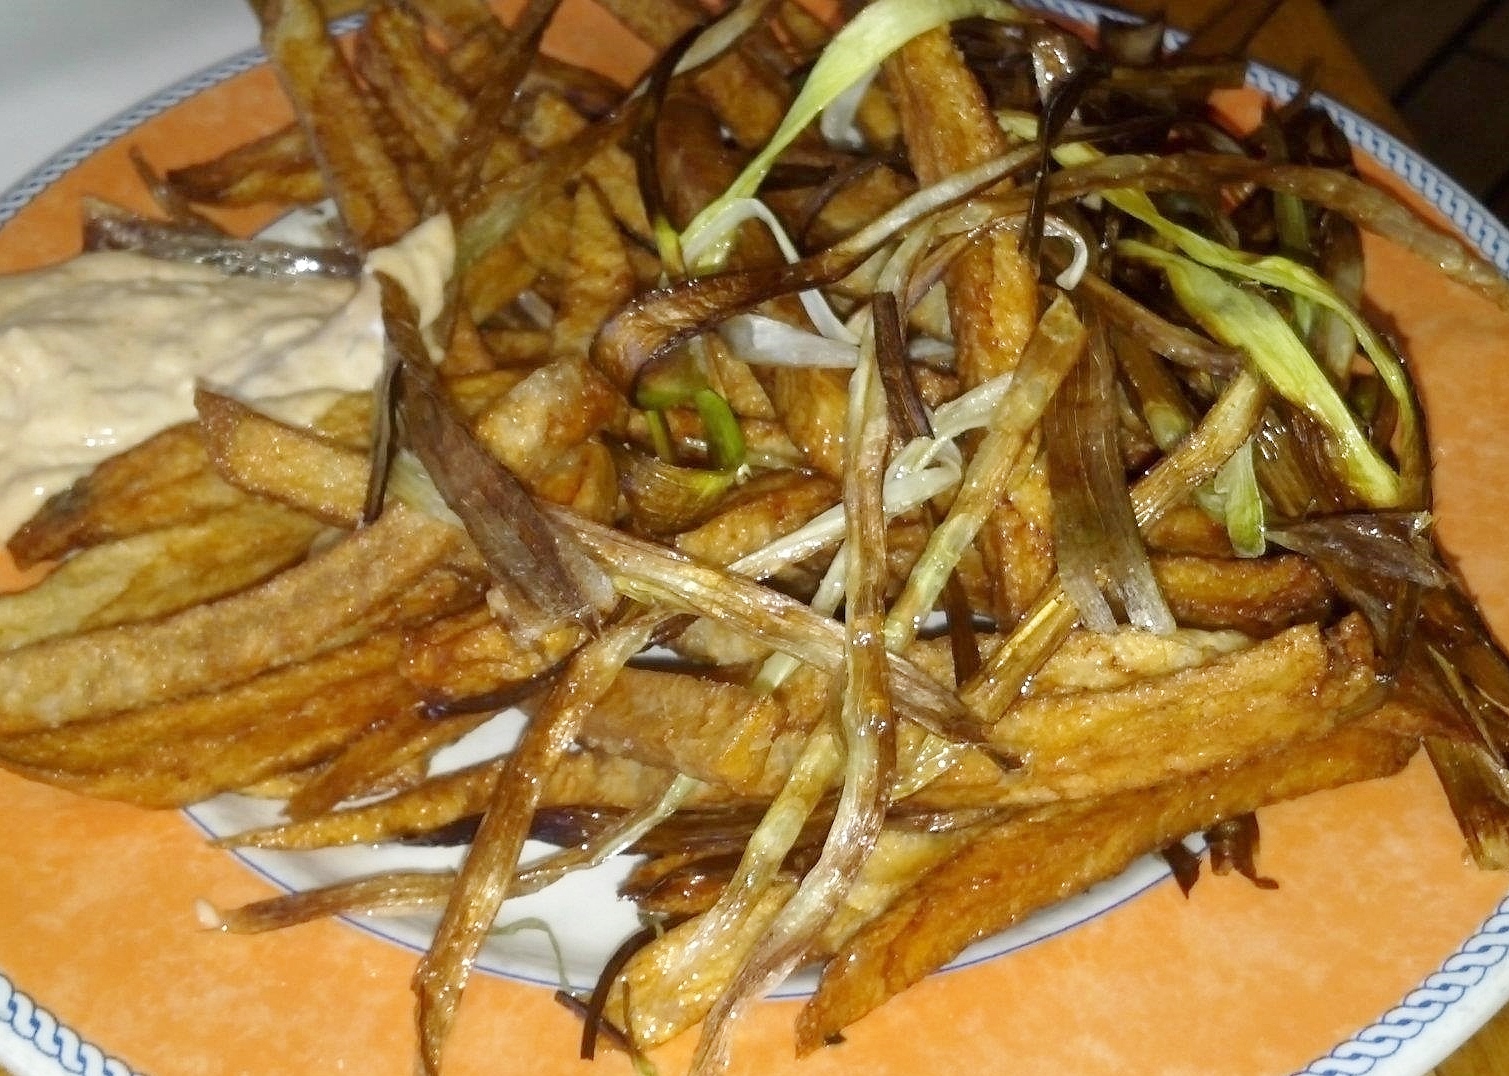 Patatine fritte - fried potatoes with crispy leeks 